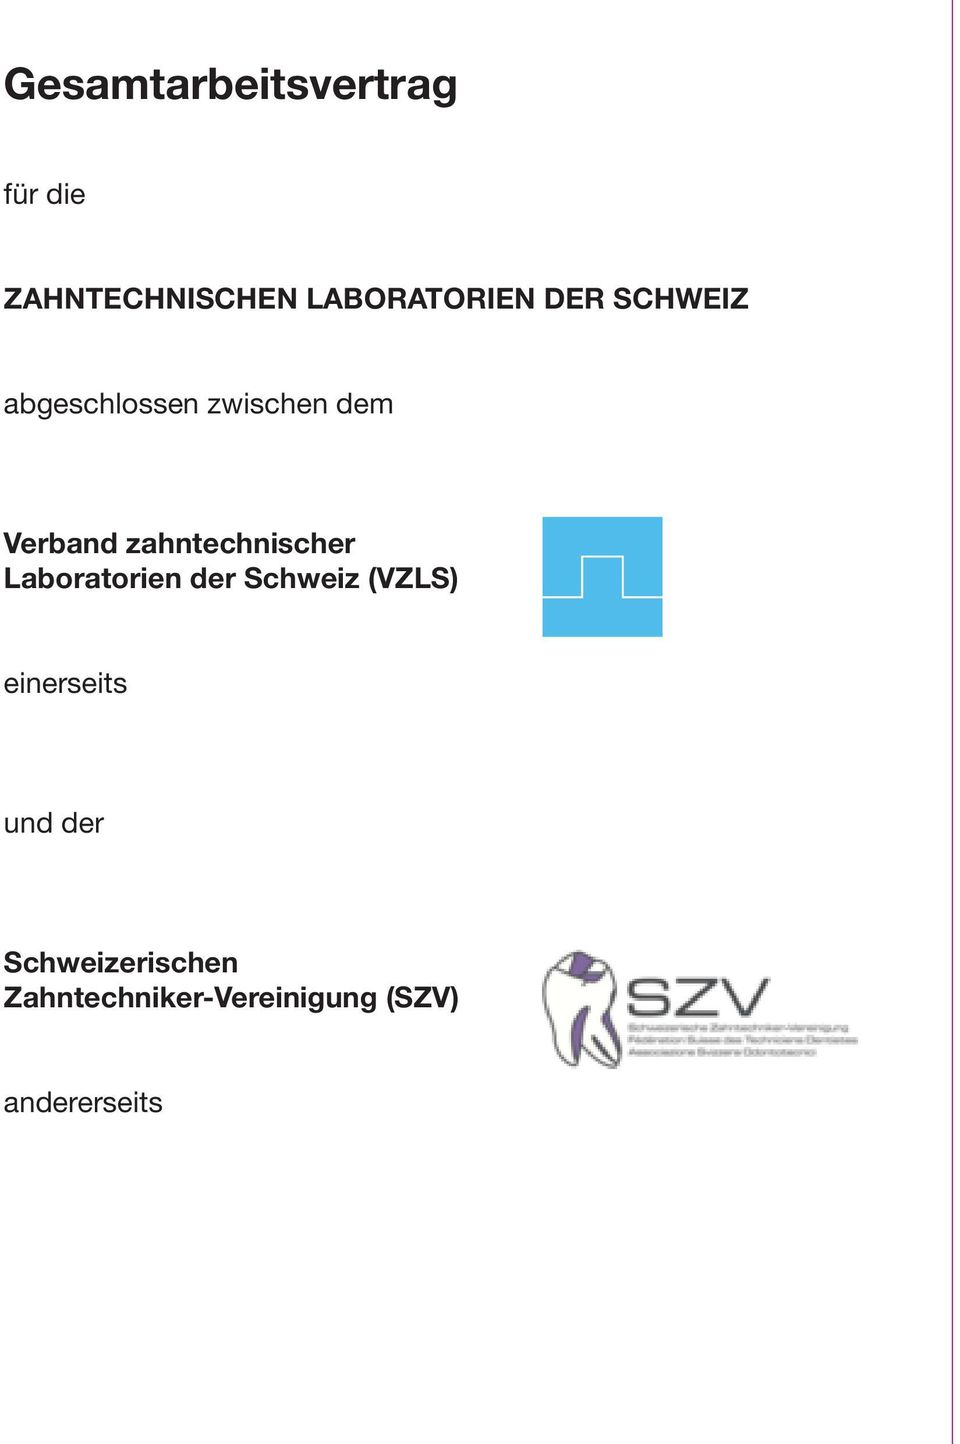 zahntechnischer Laboratorien der Schweiz (VZLS)